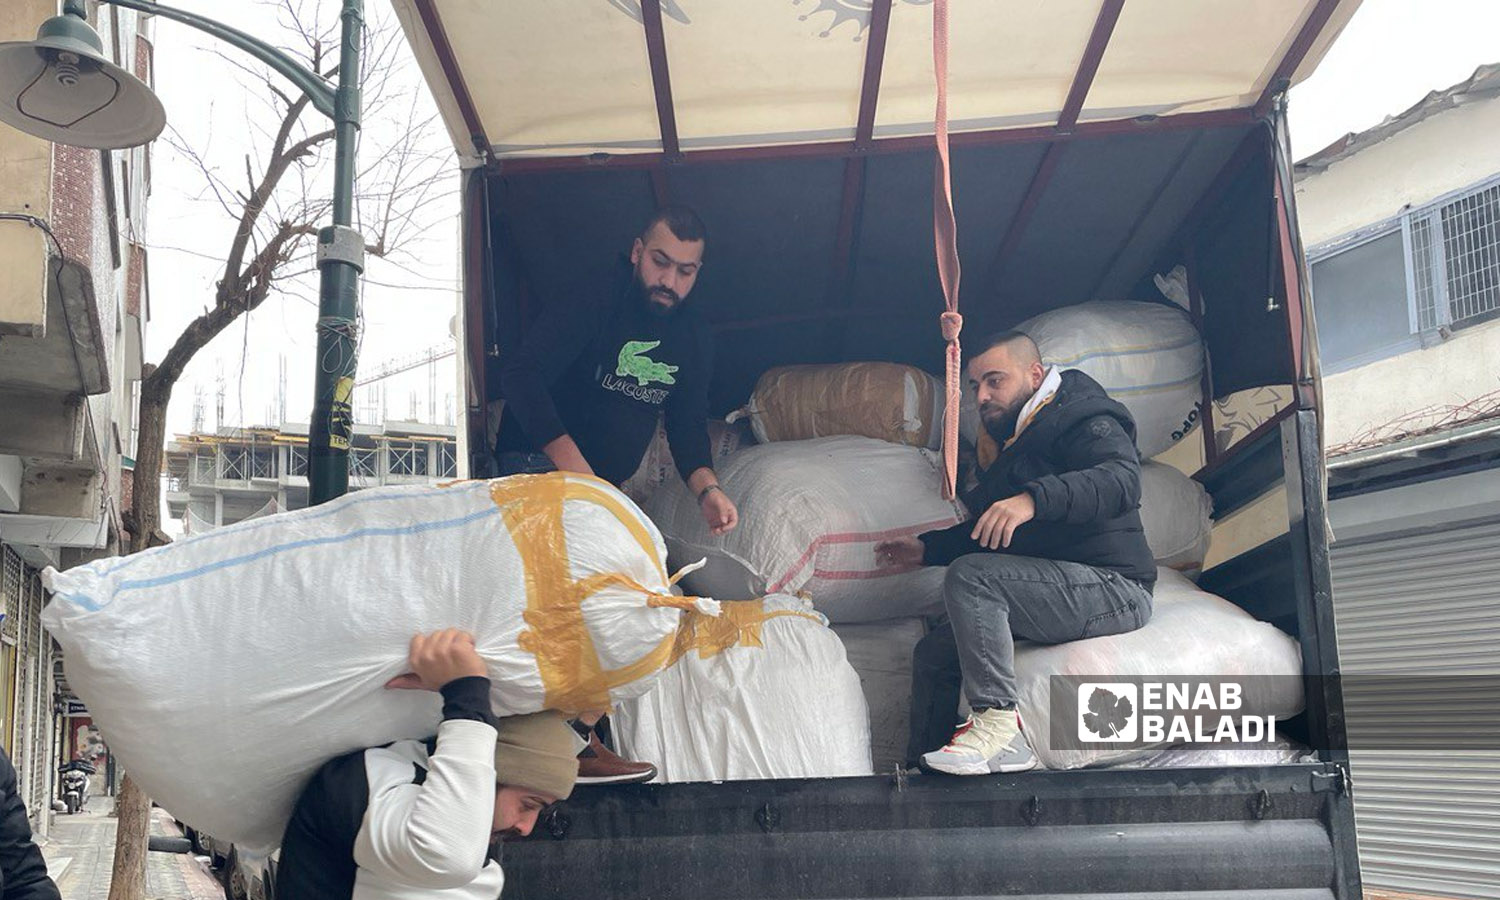 شباب سوريون ينقلون مساعدات تمهيدًا لإرسالها من اسطنبول إلى المناطق المتضررة إثر الزلزال- 8 شباط 2023 (عنب بلدي)